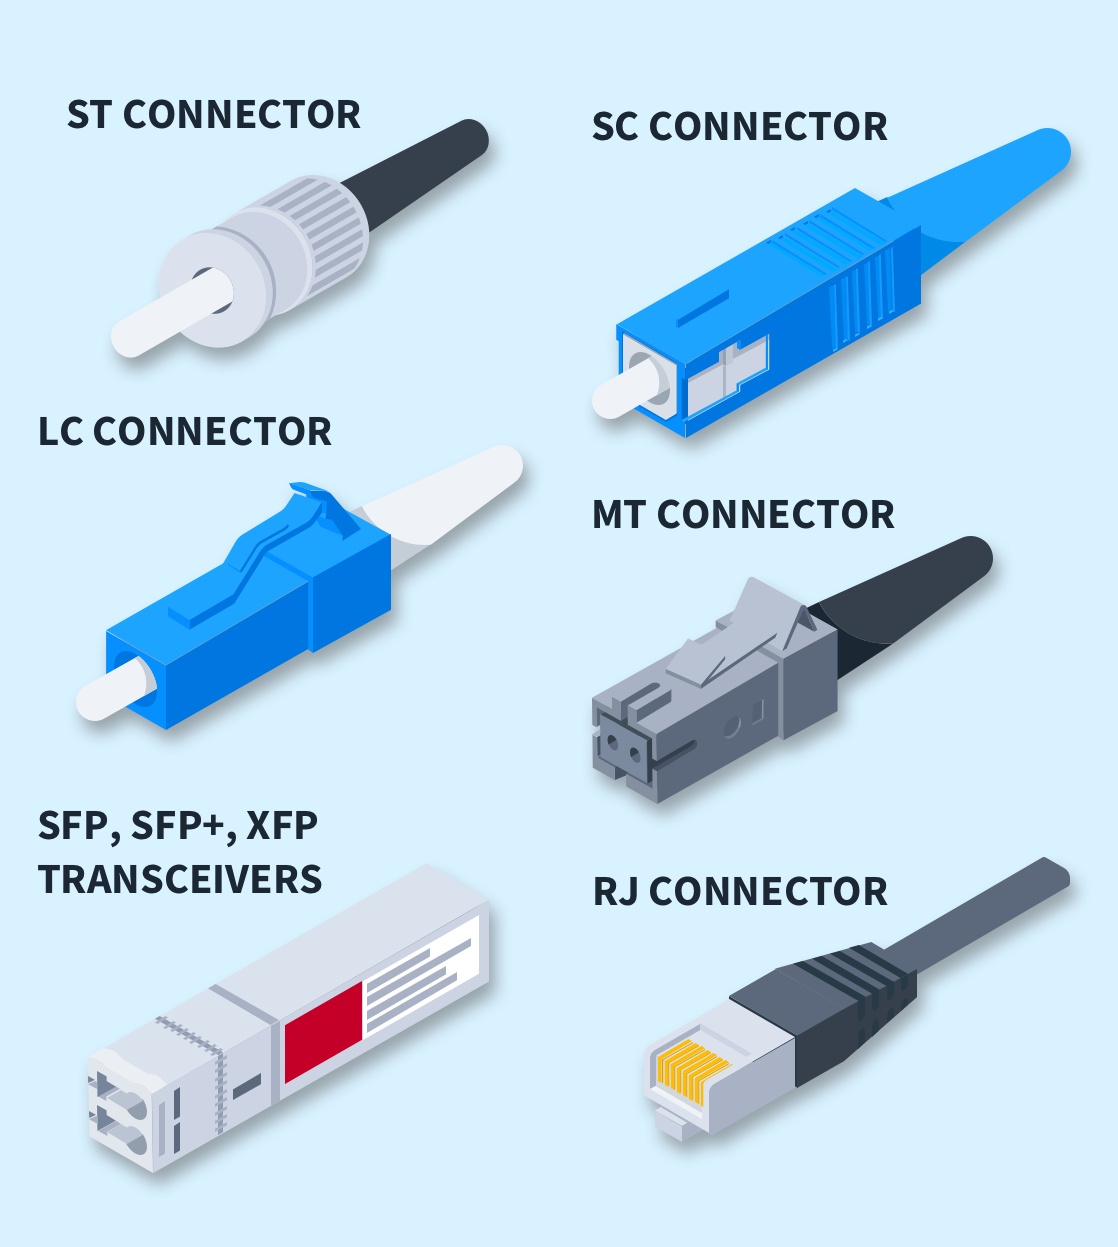 以太网布线要点：连接器和电缆管理